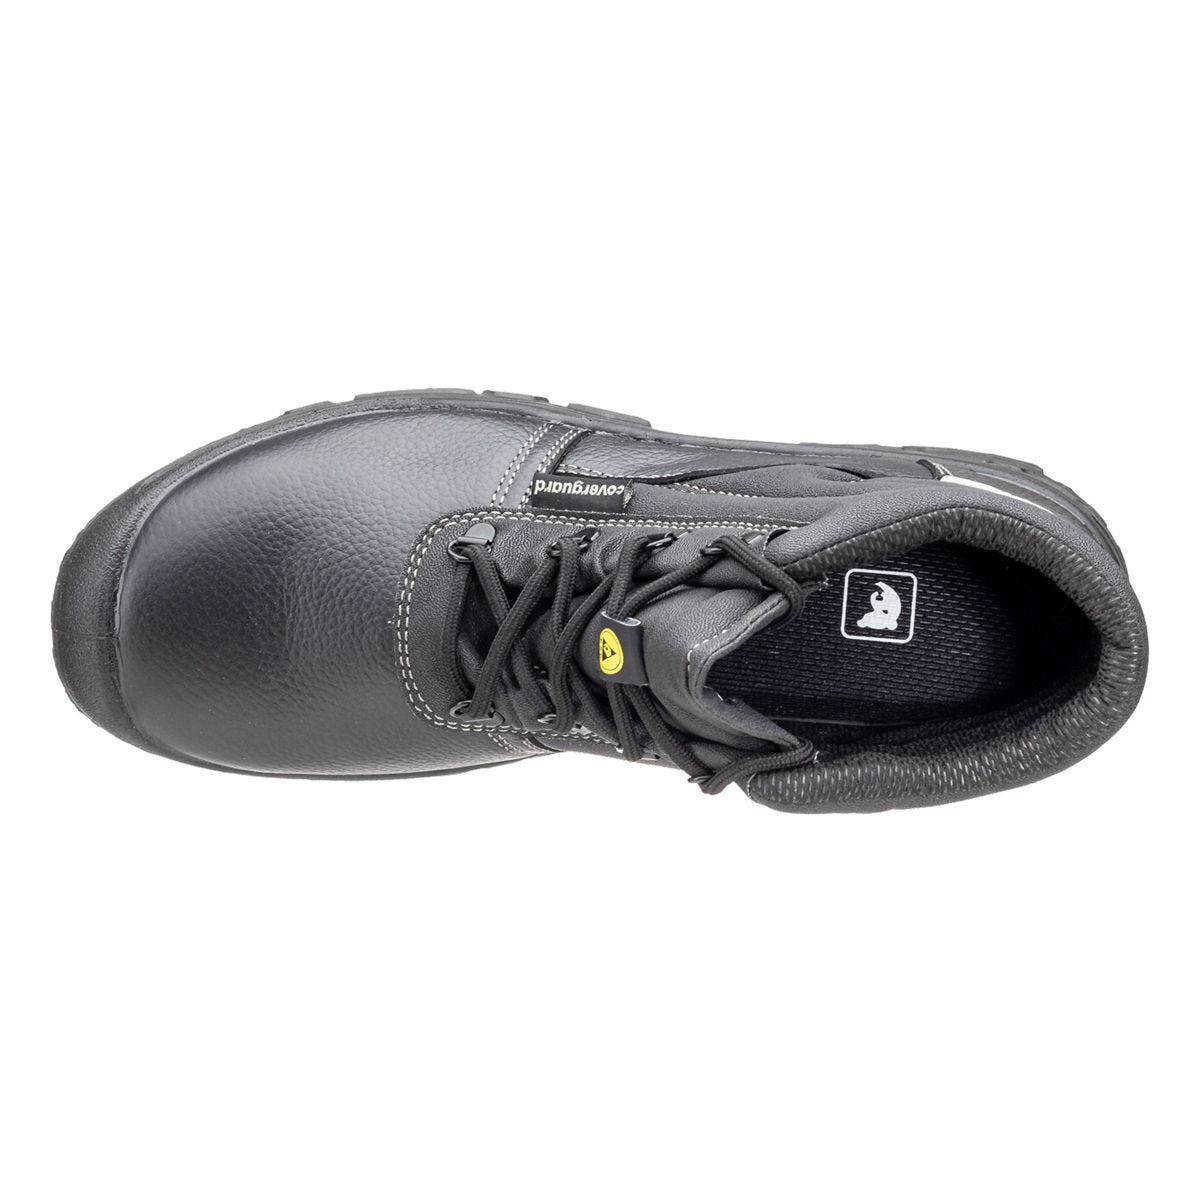 Chaussures de sécurité hautes Azurite II S3 ESD noir - Coverguard - Taille 41 3